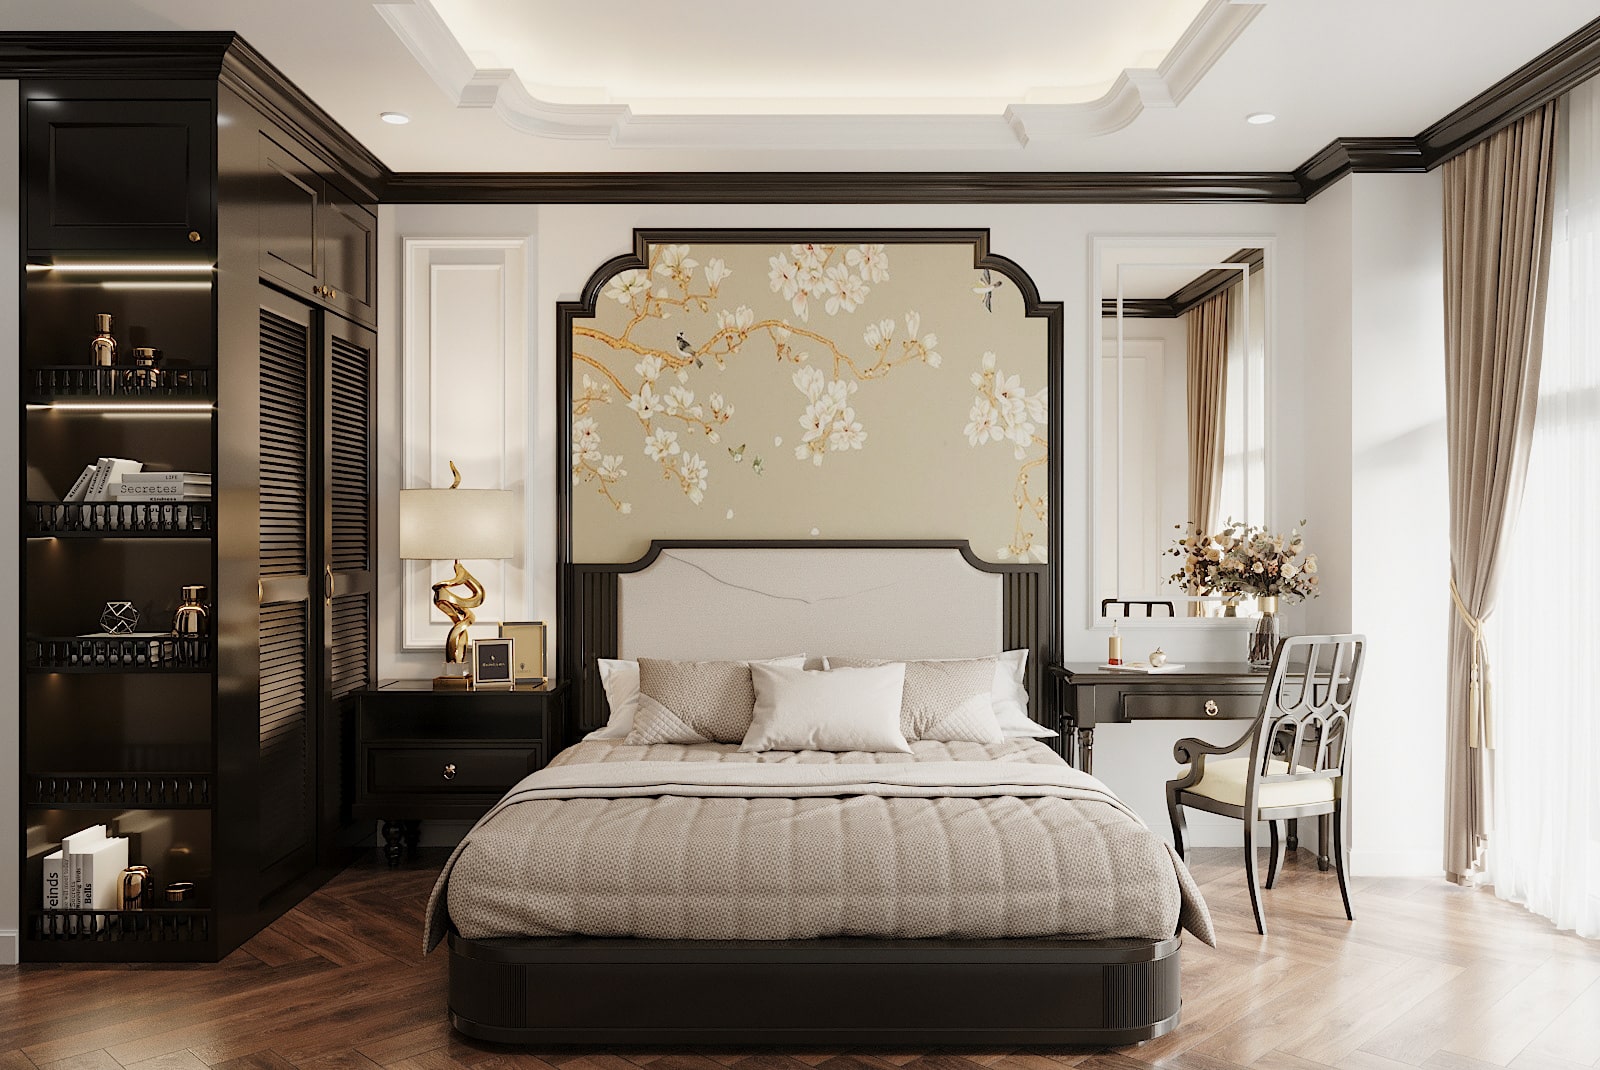 Các họa tiết trang trí phòng ngủ phong cách Indochine vô cùng độc đáo và sang trọng